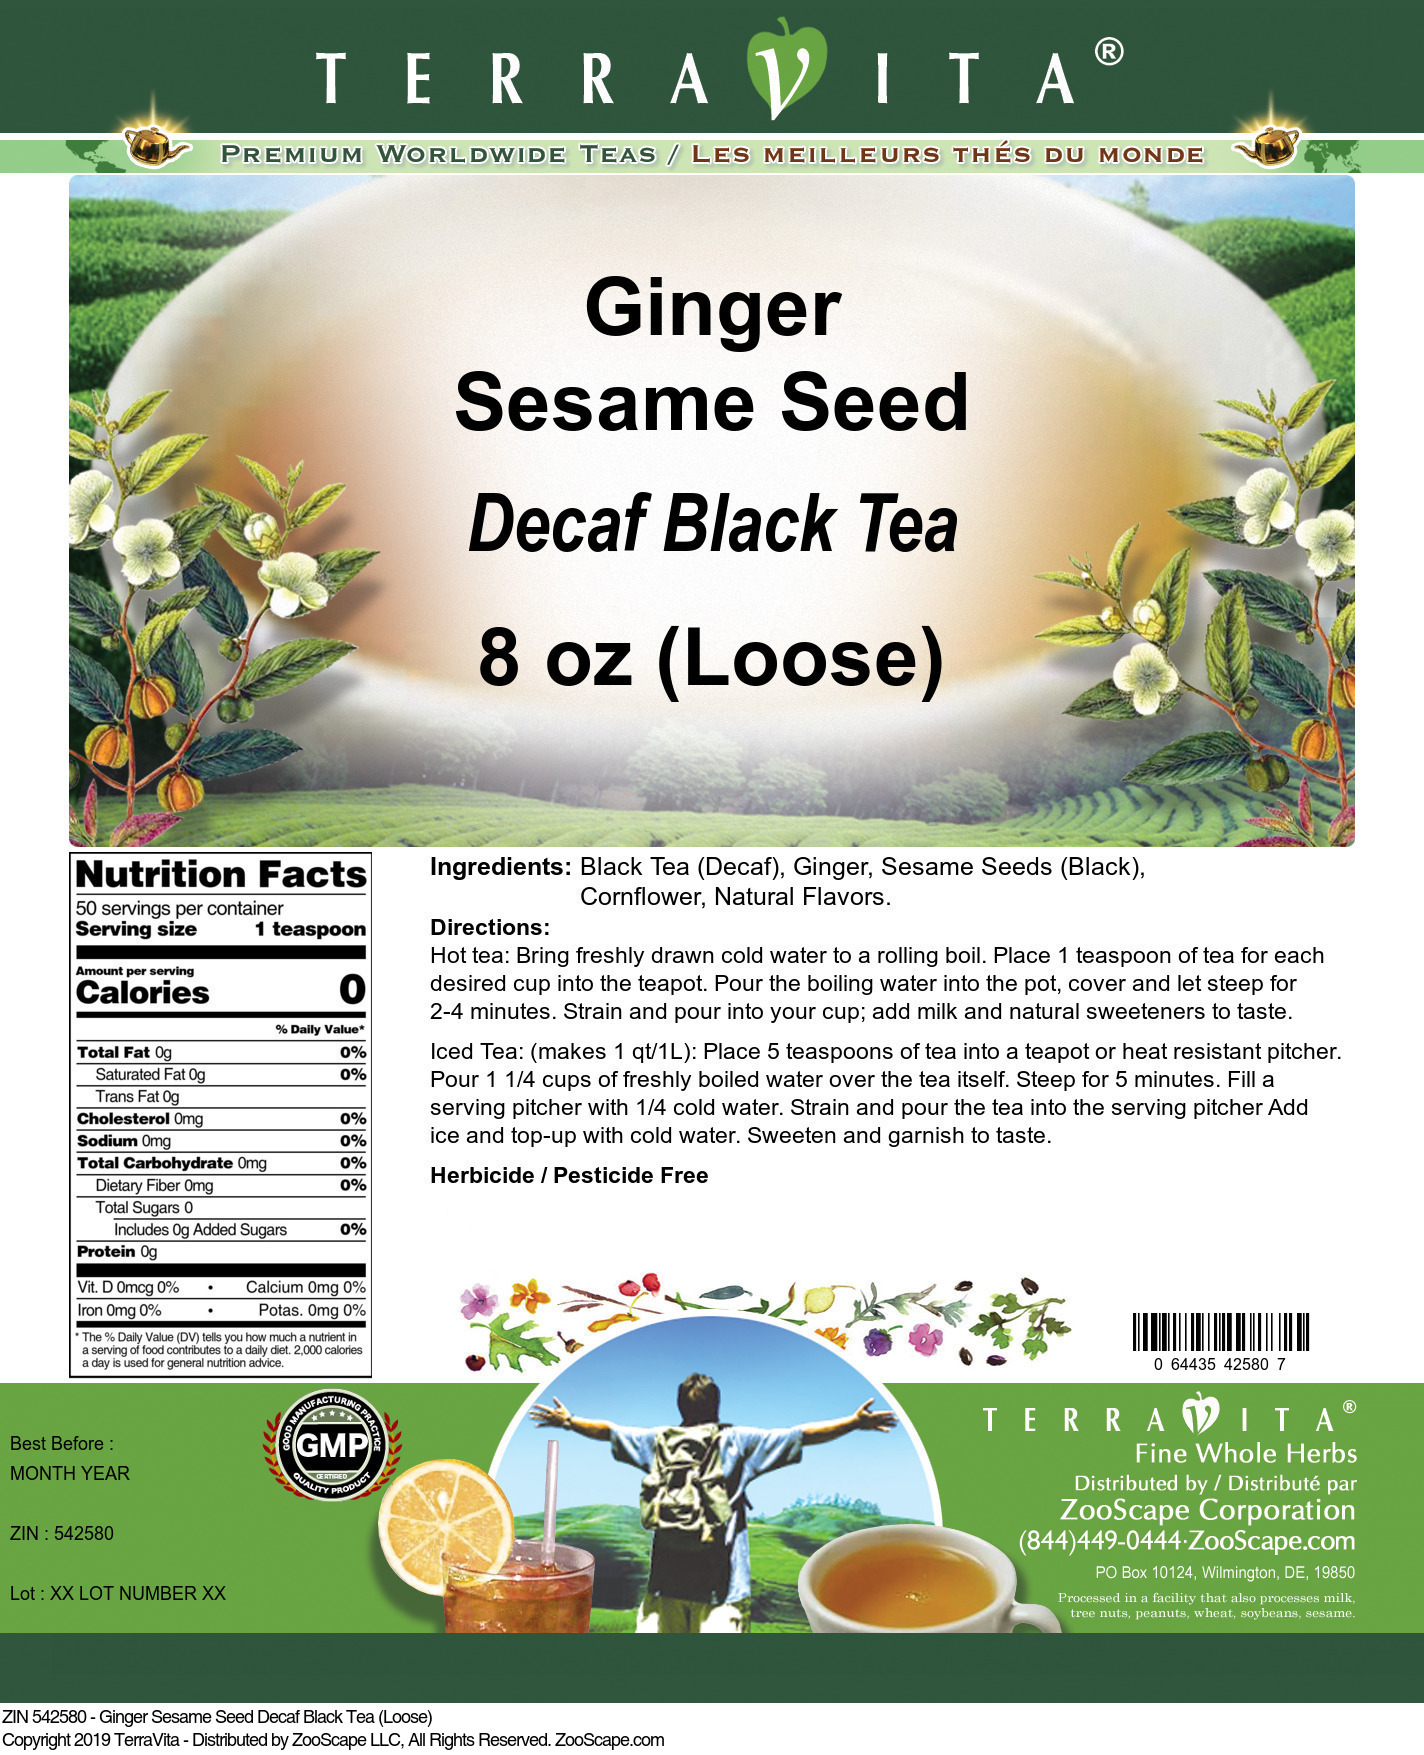 Ginger Sesame Seed Decaf Black Tea (Loose) - Label